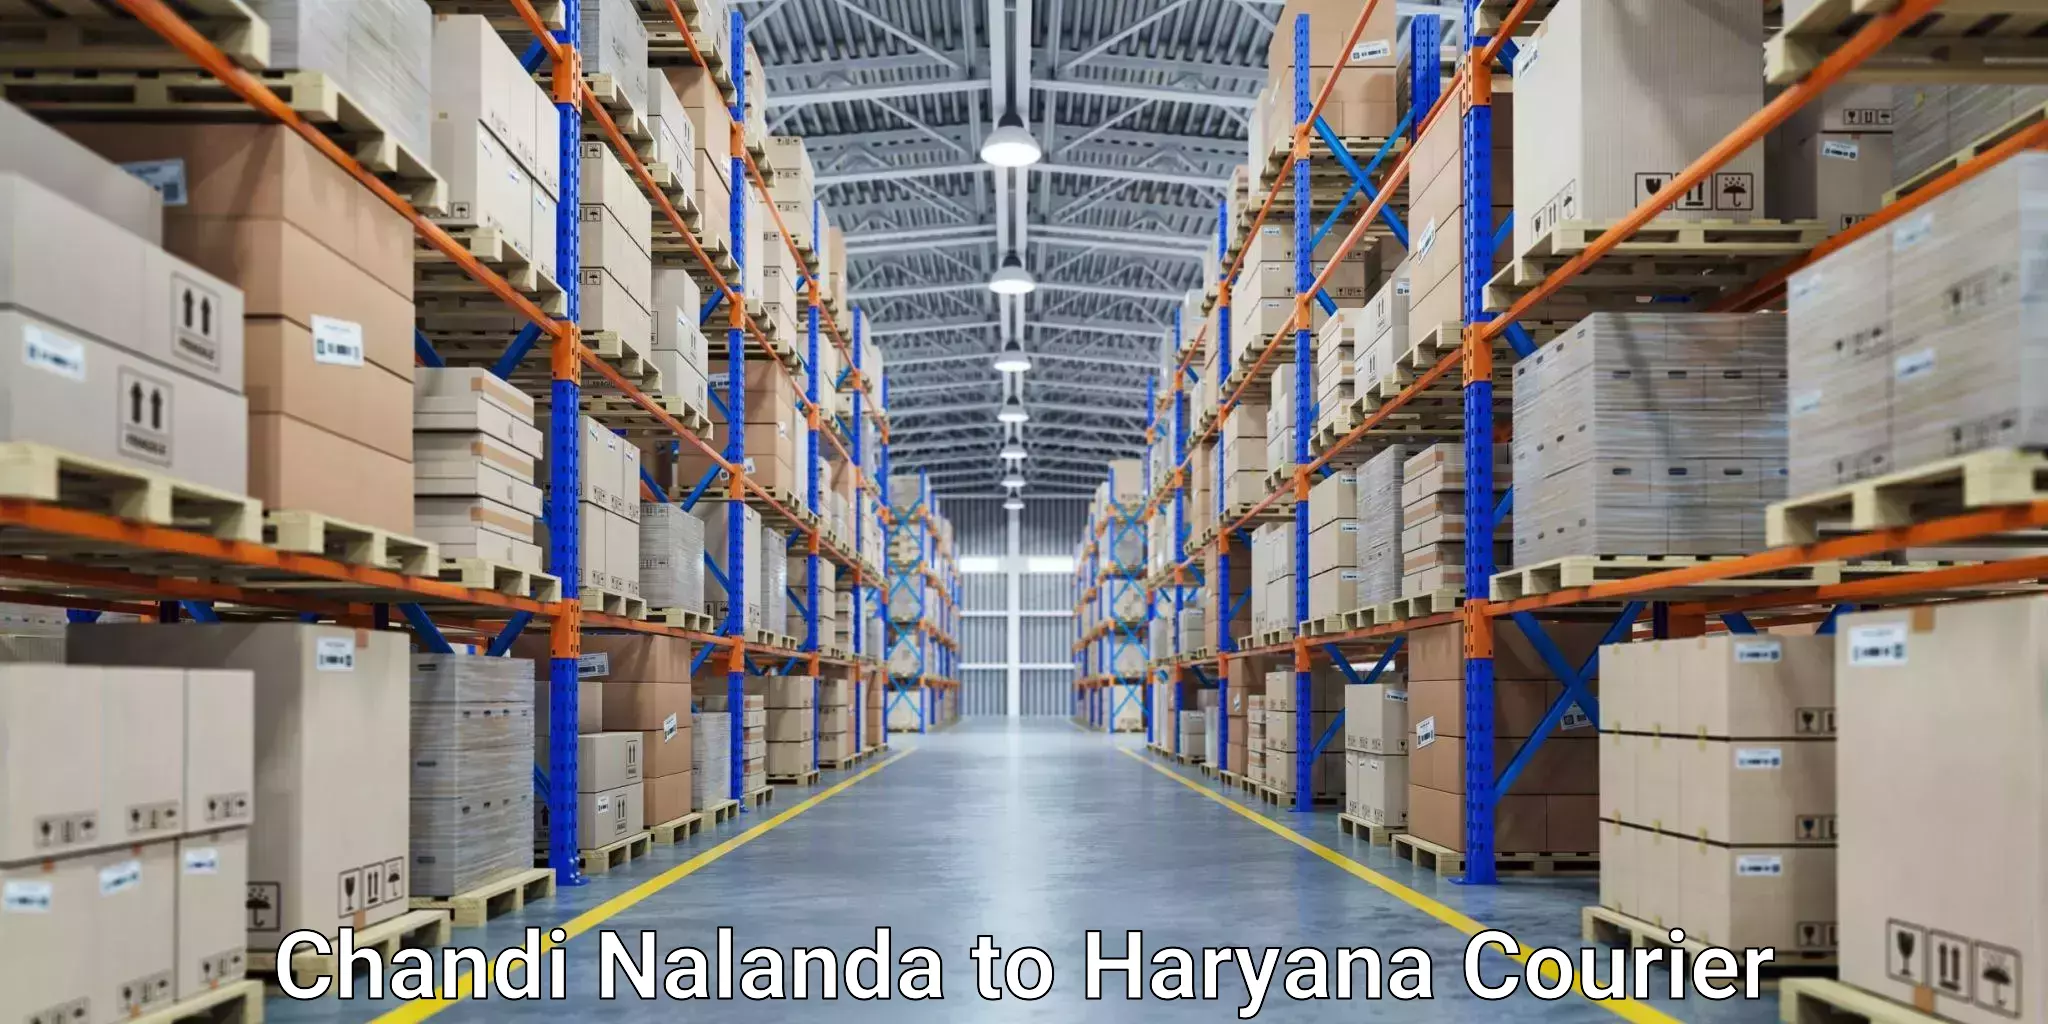 Express logistics providers Chandi Nalanda to Charkhari